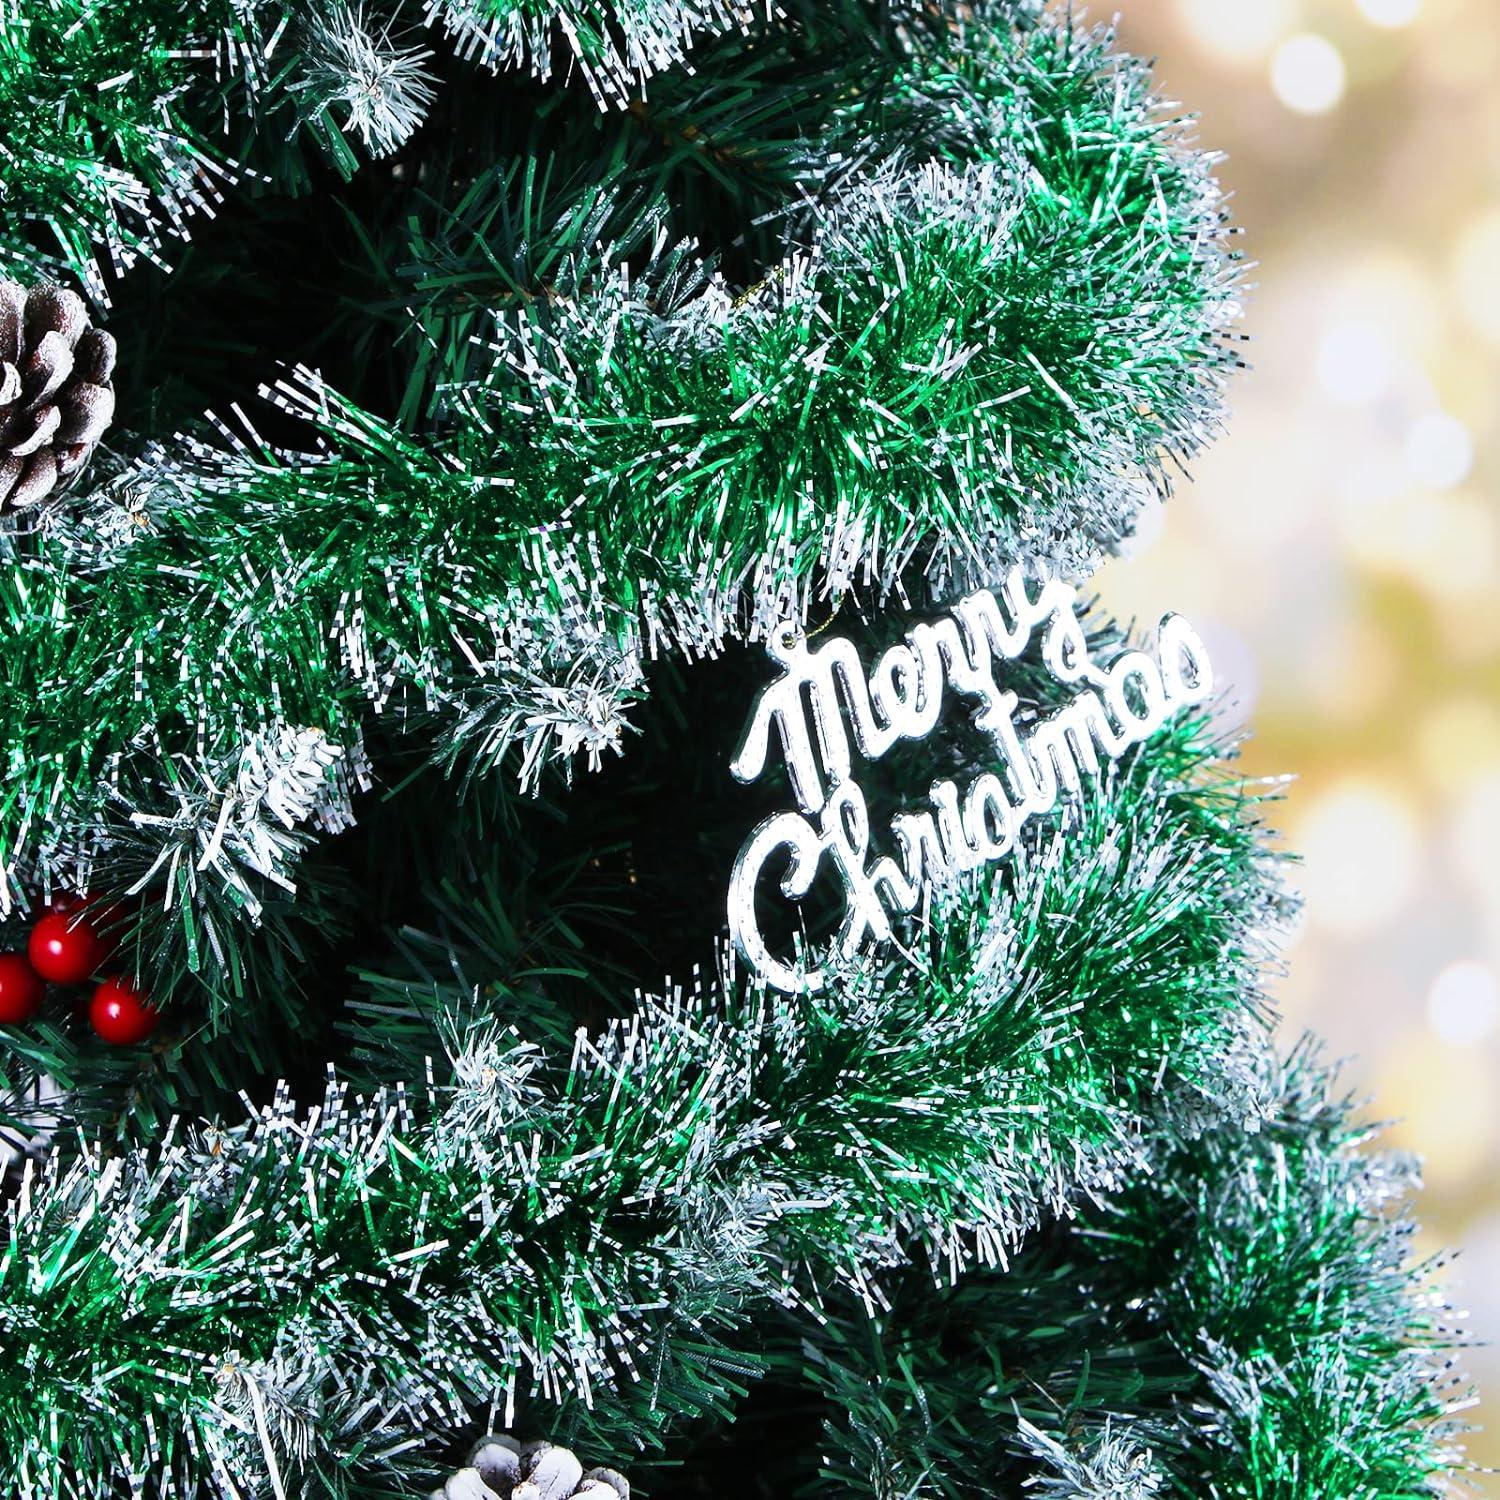 Vòng hoa dây kim tuyến Aurasky Christmas Màu xanh lá cây, Bộ 5 vòng hoa Giáng sinh, Vòng hoa dây kim tuyến, Vòng hoa cây thông Noel